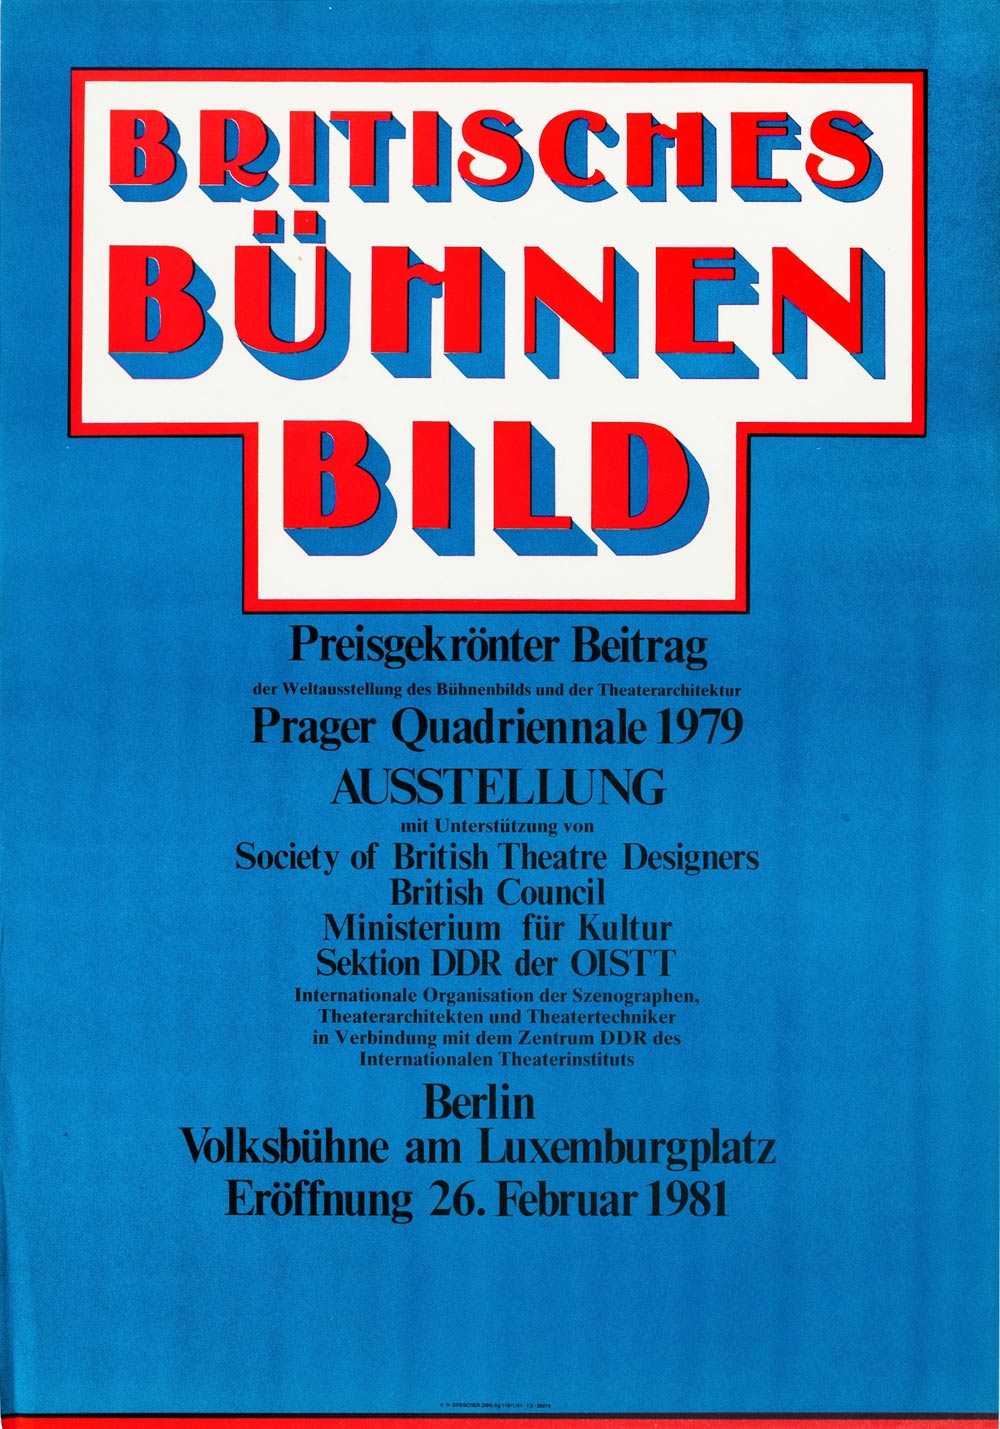 Original Poster: K.H. Drescher “Britisches Bühnenbild”